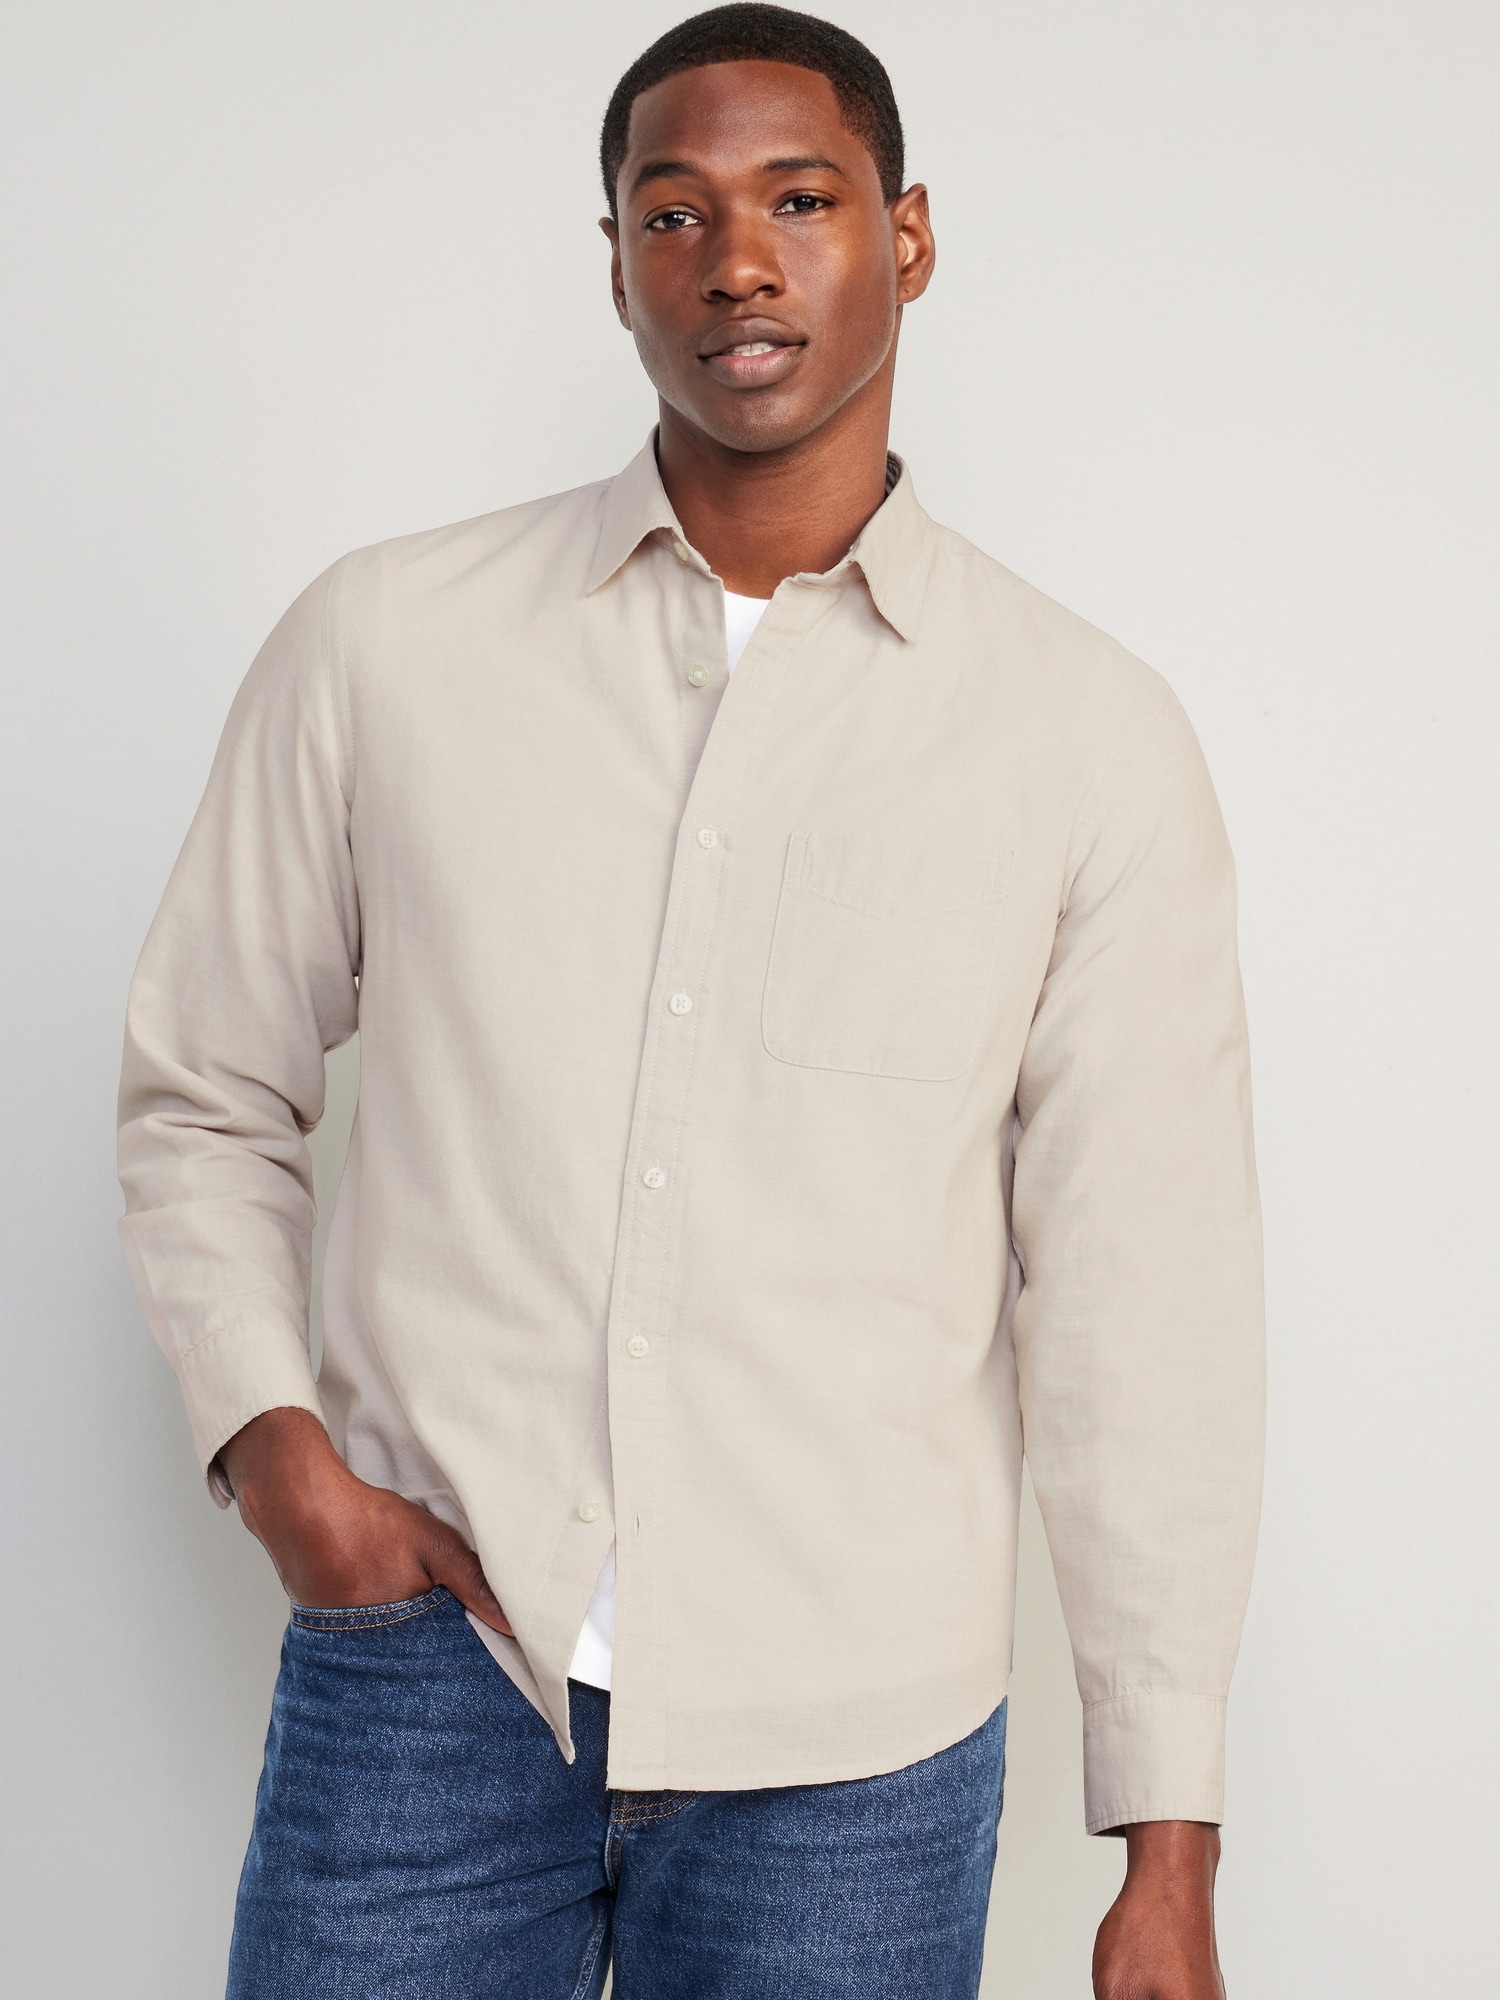 Lightweight Cotton Shirts for Men